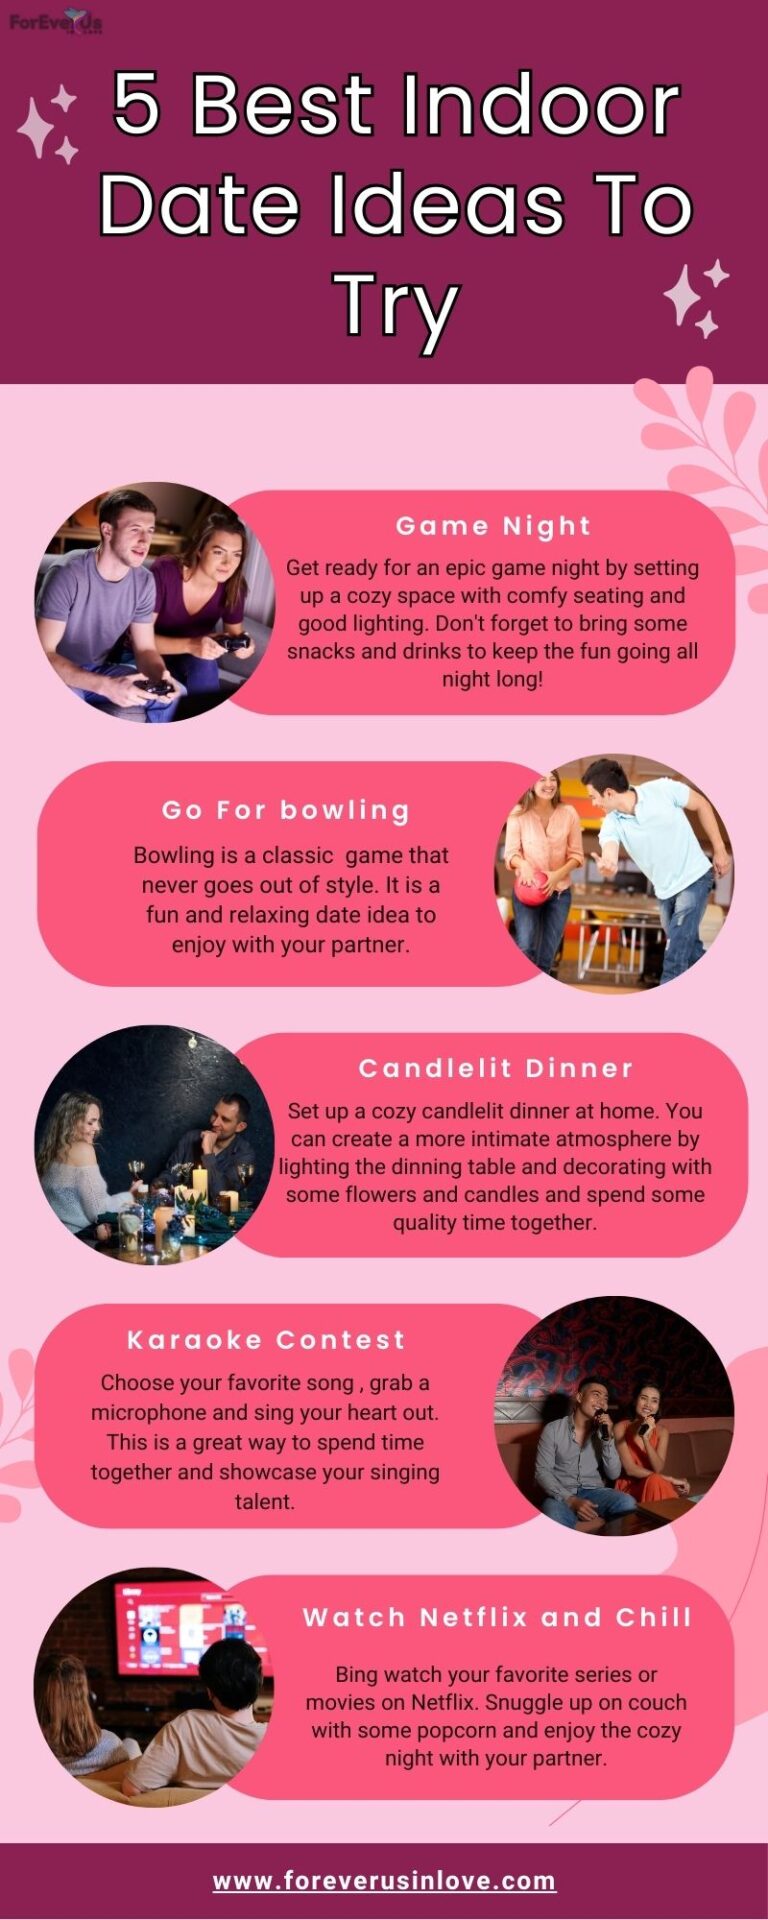 5 Best Indoor Date Ideas To Try